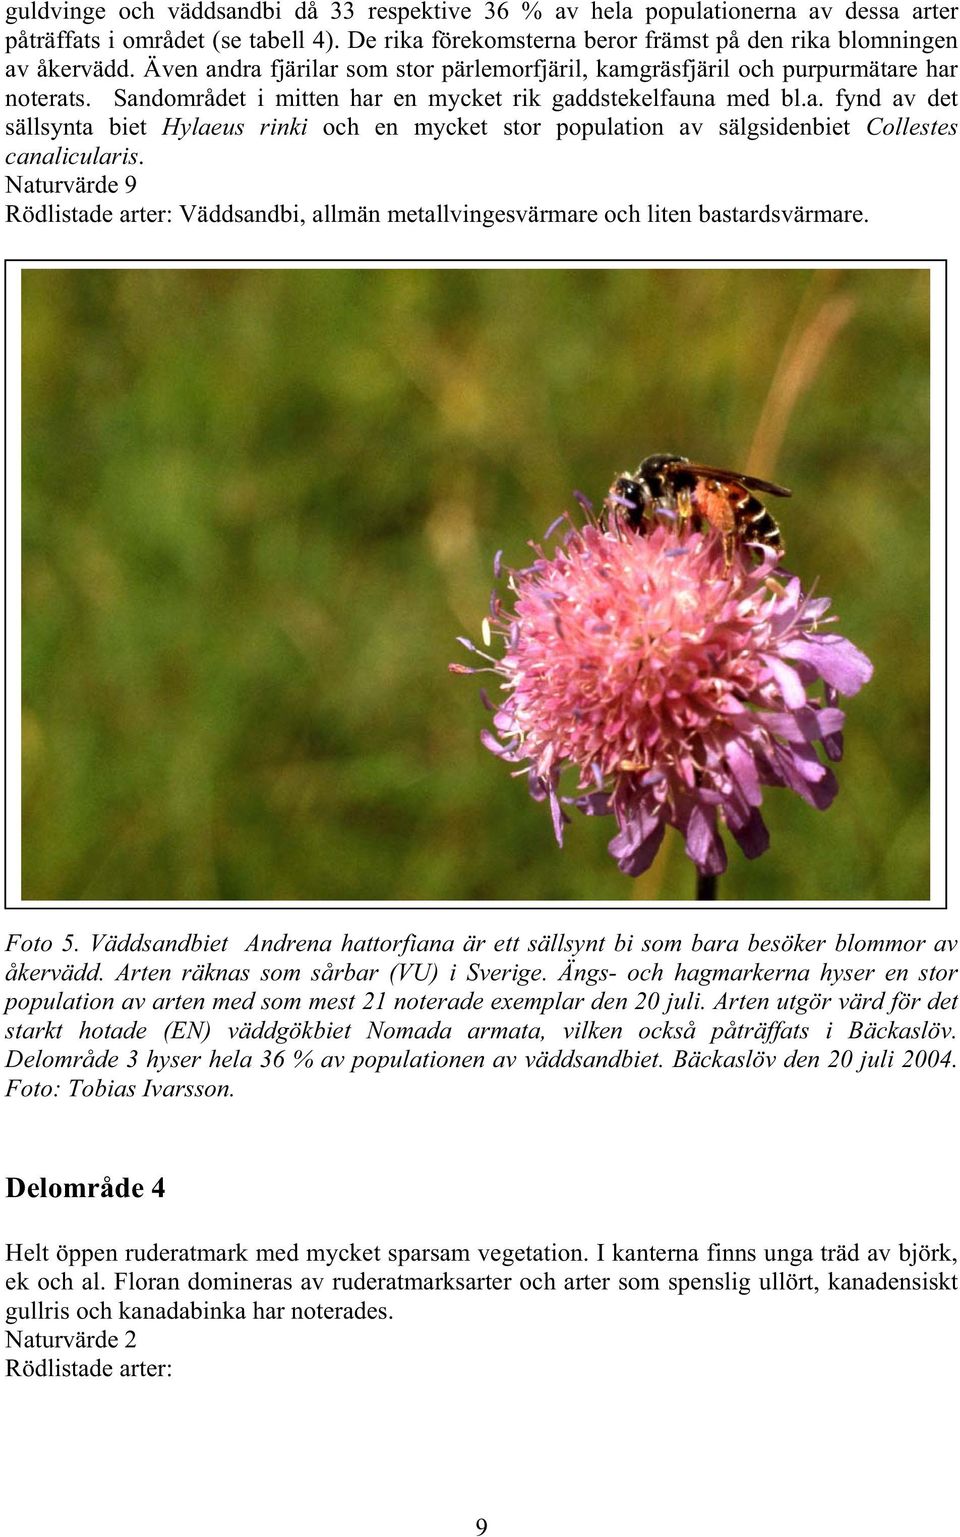 Naturvärde 9 Rödlistade arter: Väddsandbi, allmän metallvingesvärmare och liten bastardsvärmare. Foto 5. Väddsandbiet Andrena hattorfiana är ett sällsynt bi som bara besöker blommor av åkervädd.